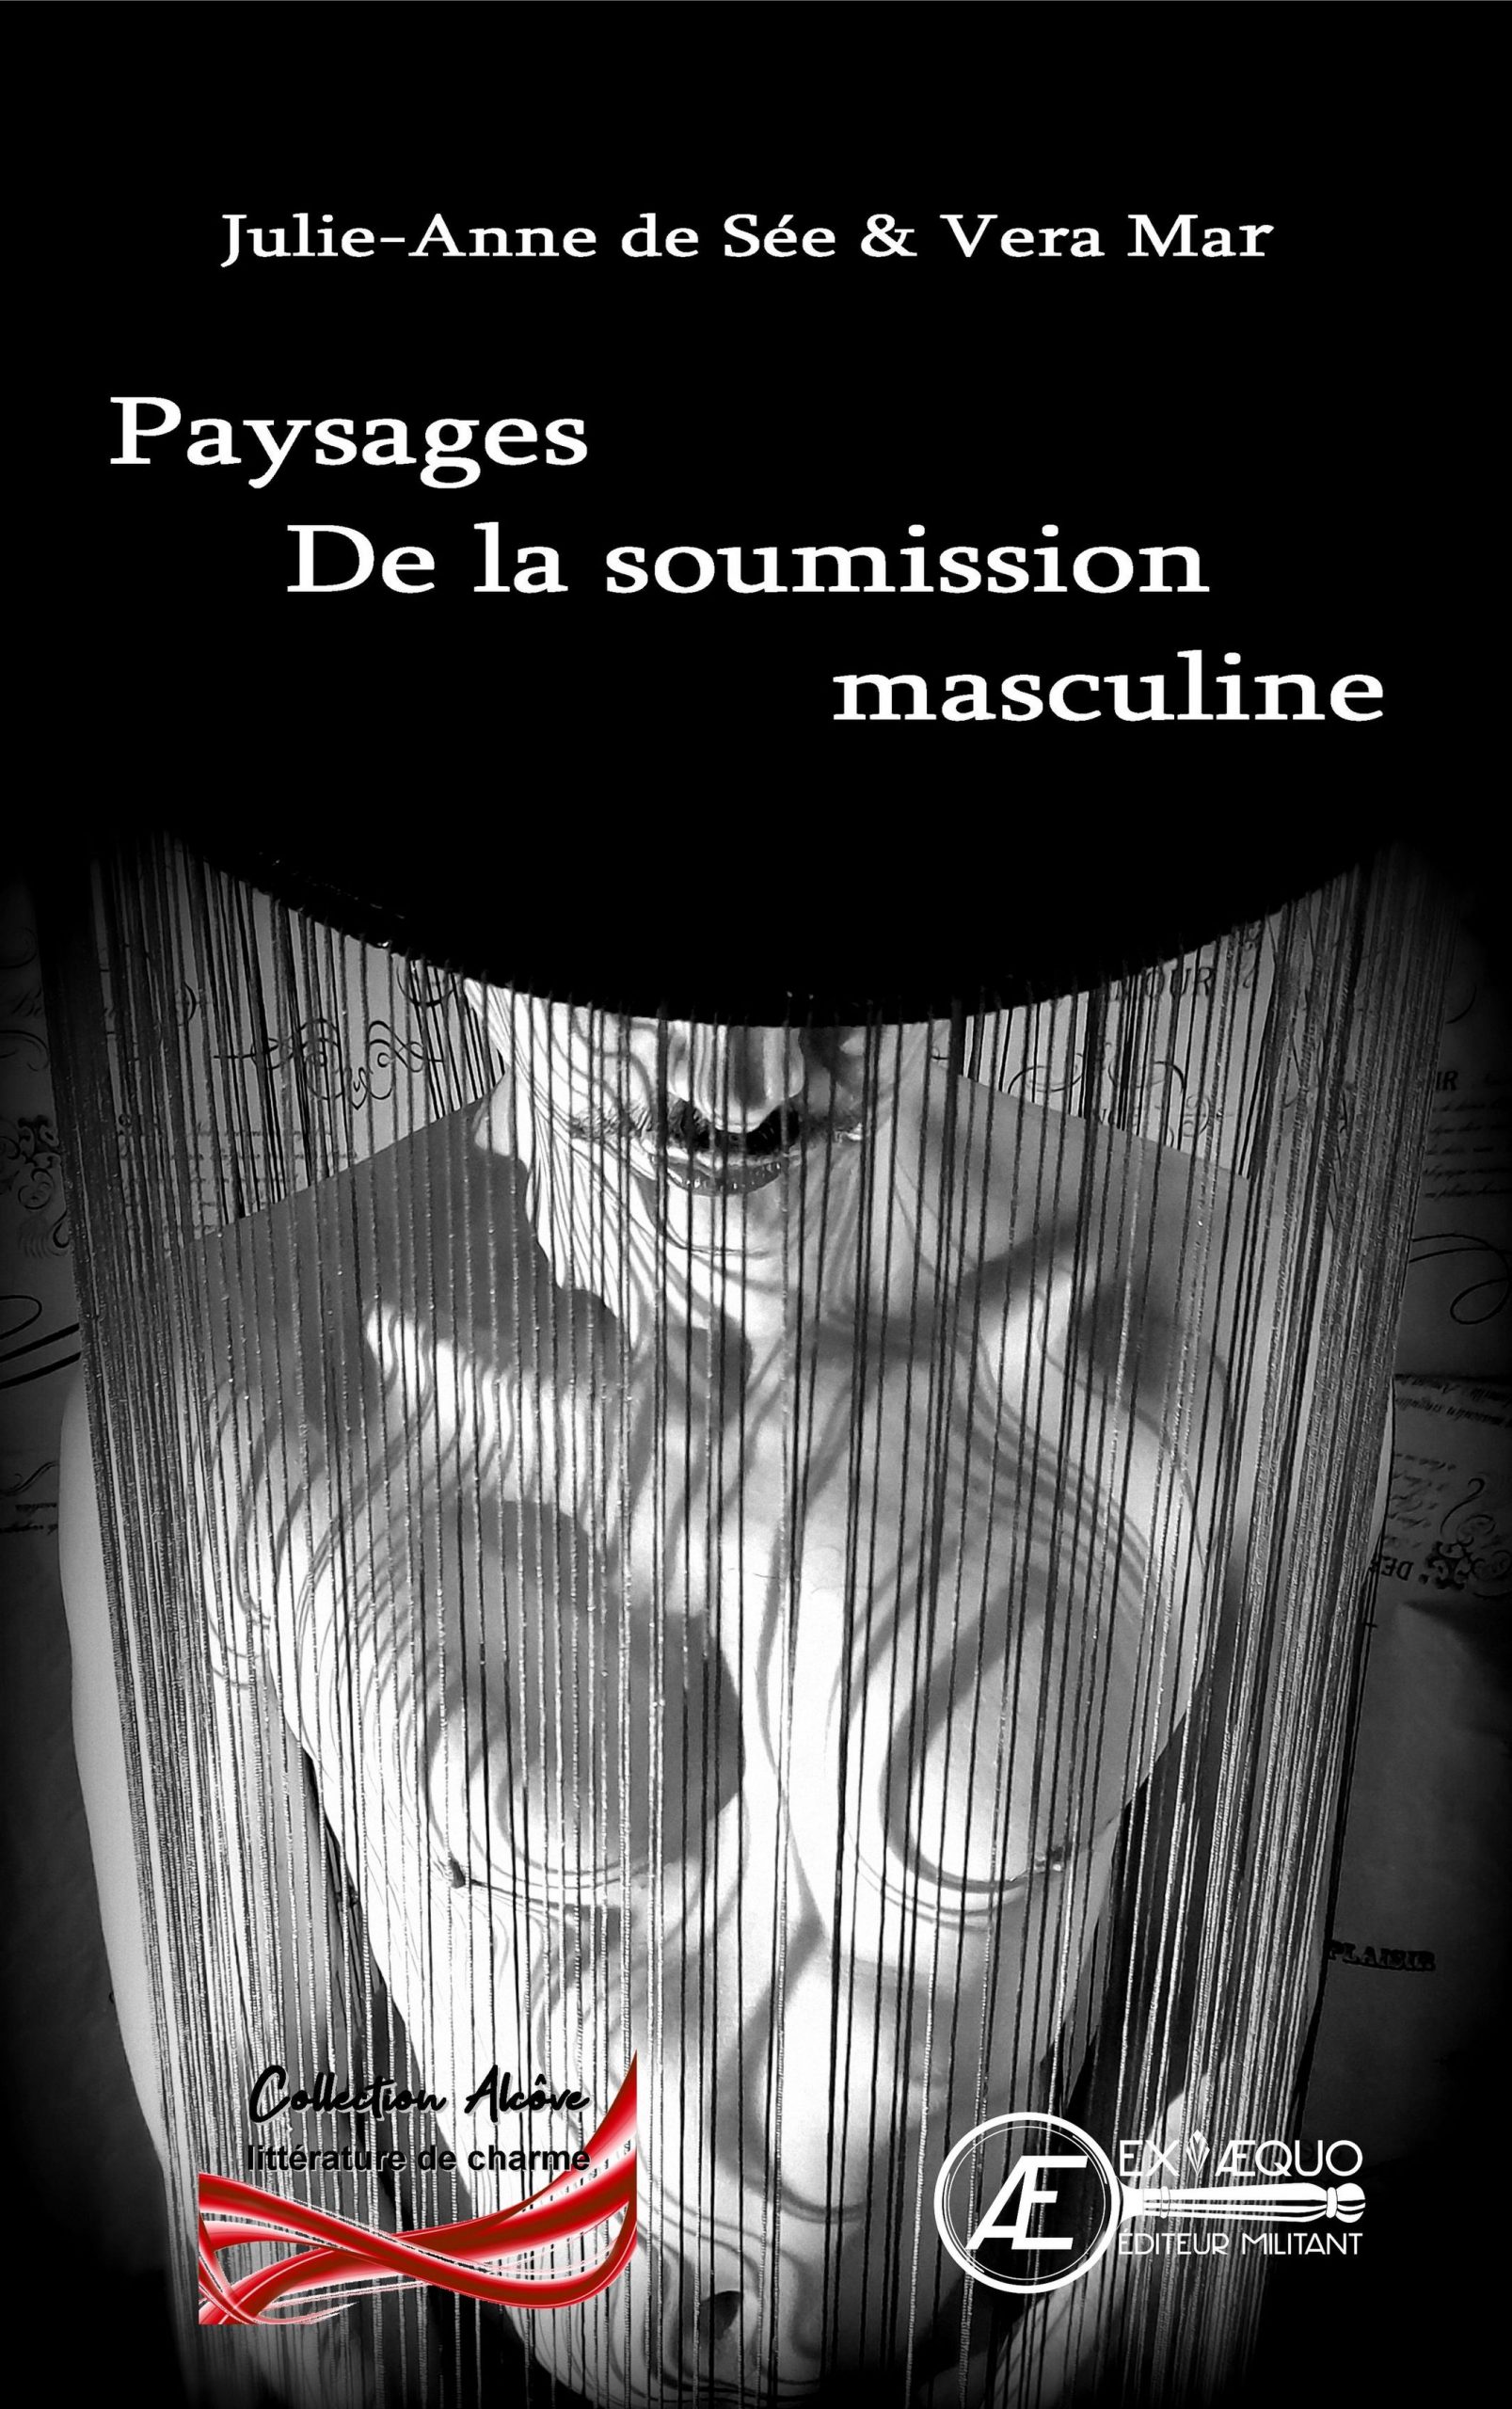 You are currently viewing Paysages de la soumission masculine, de Julie-Anne de Sée & Vera Mar